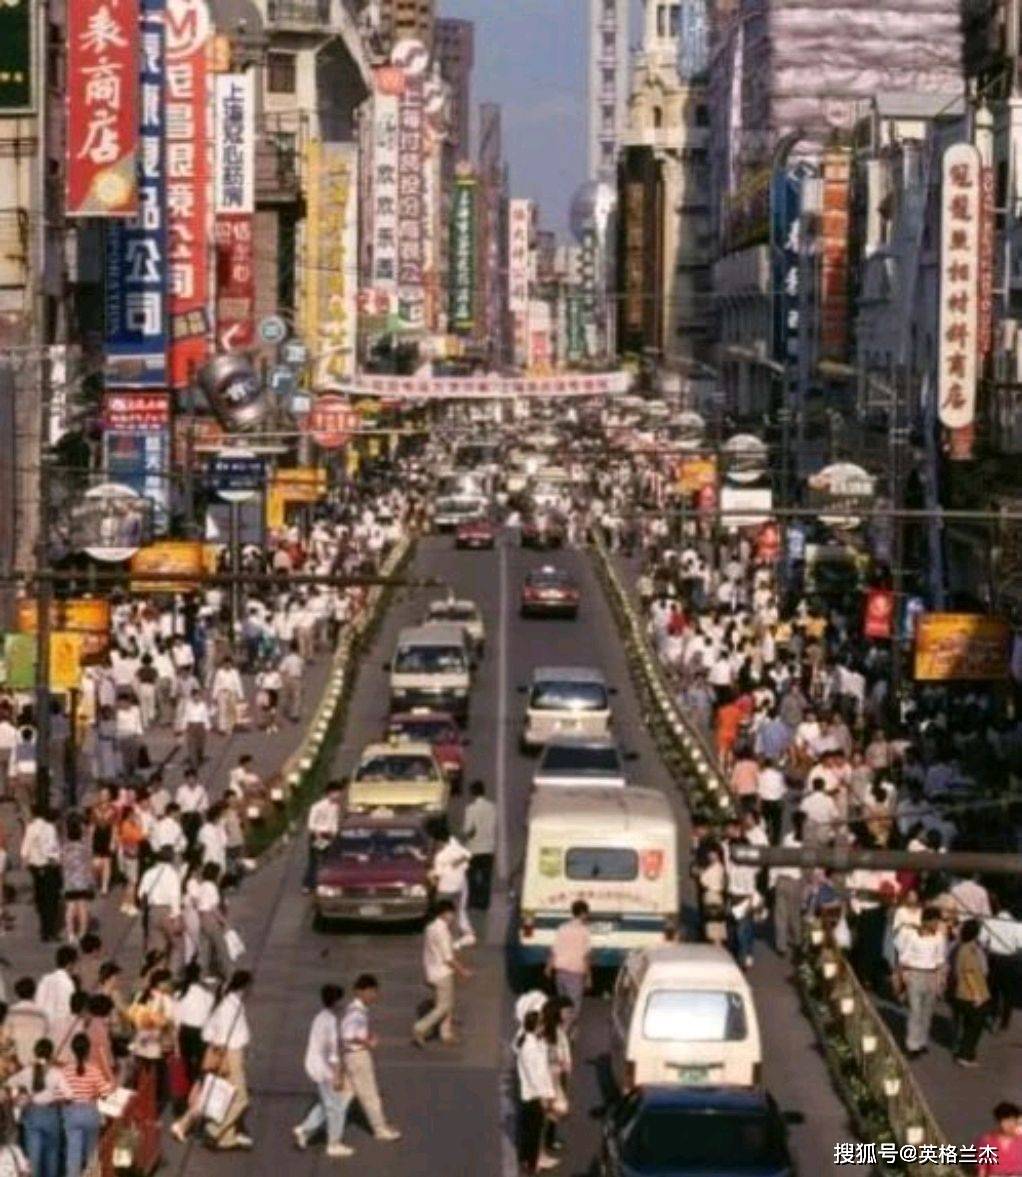 原创90年代江苏南京老照片,街道上人来人往,热闹繁华,你怀念吗?